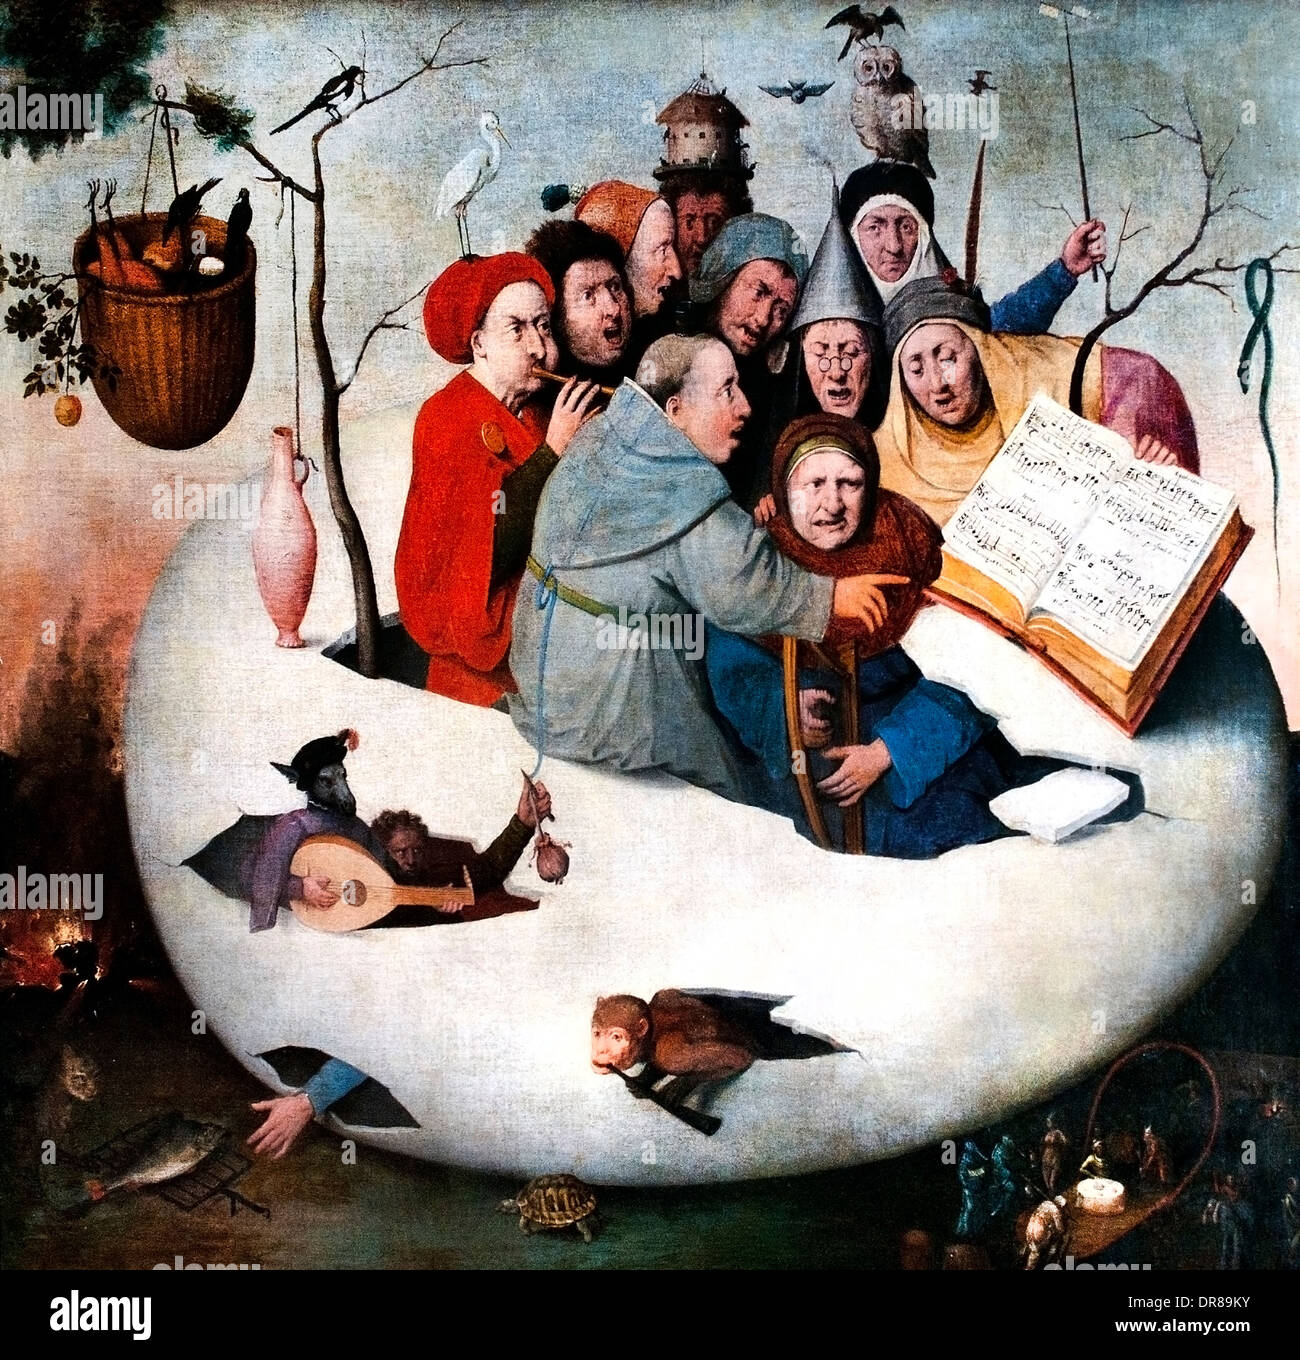 Concert à l'oeuf de Jérôme Bosch 1453-1516 Pays-Bas néerlandais (copie d'époque Pierre Bruegel le Jeune 1564-1638 ) Banque D'Images